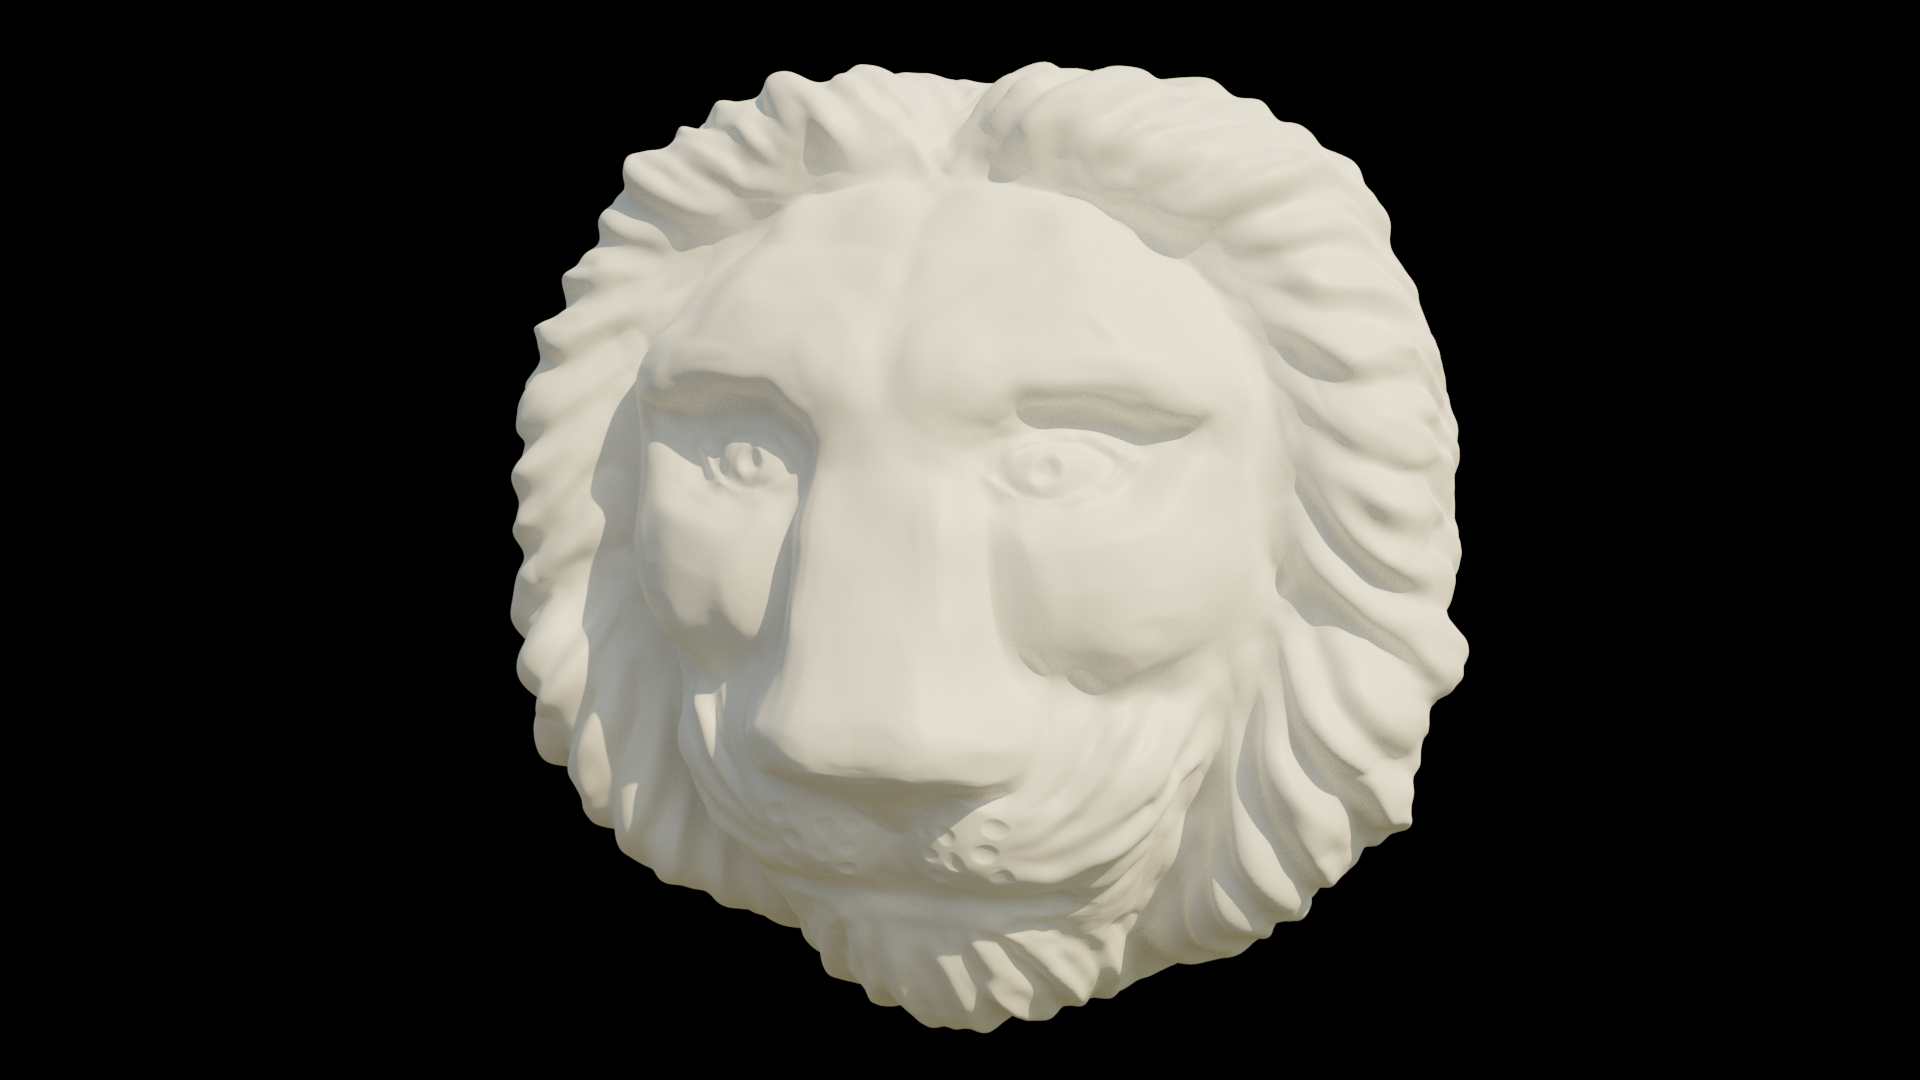 Lion's head - sculpture preview image 1